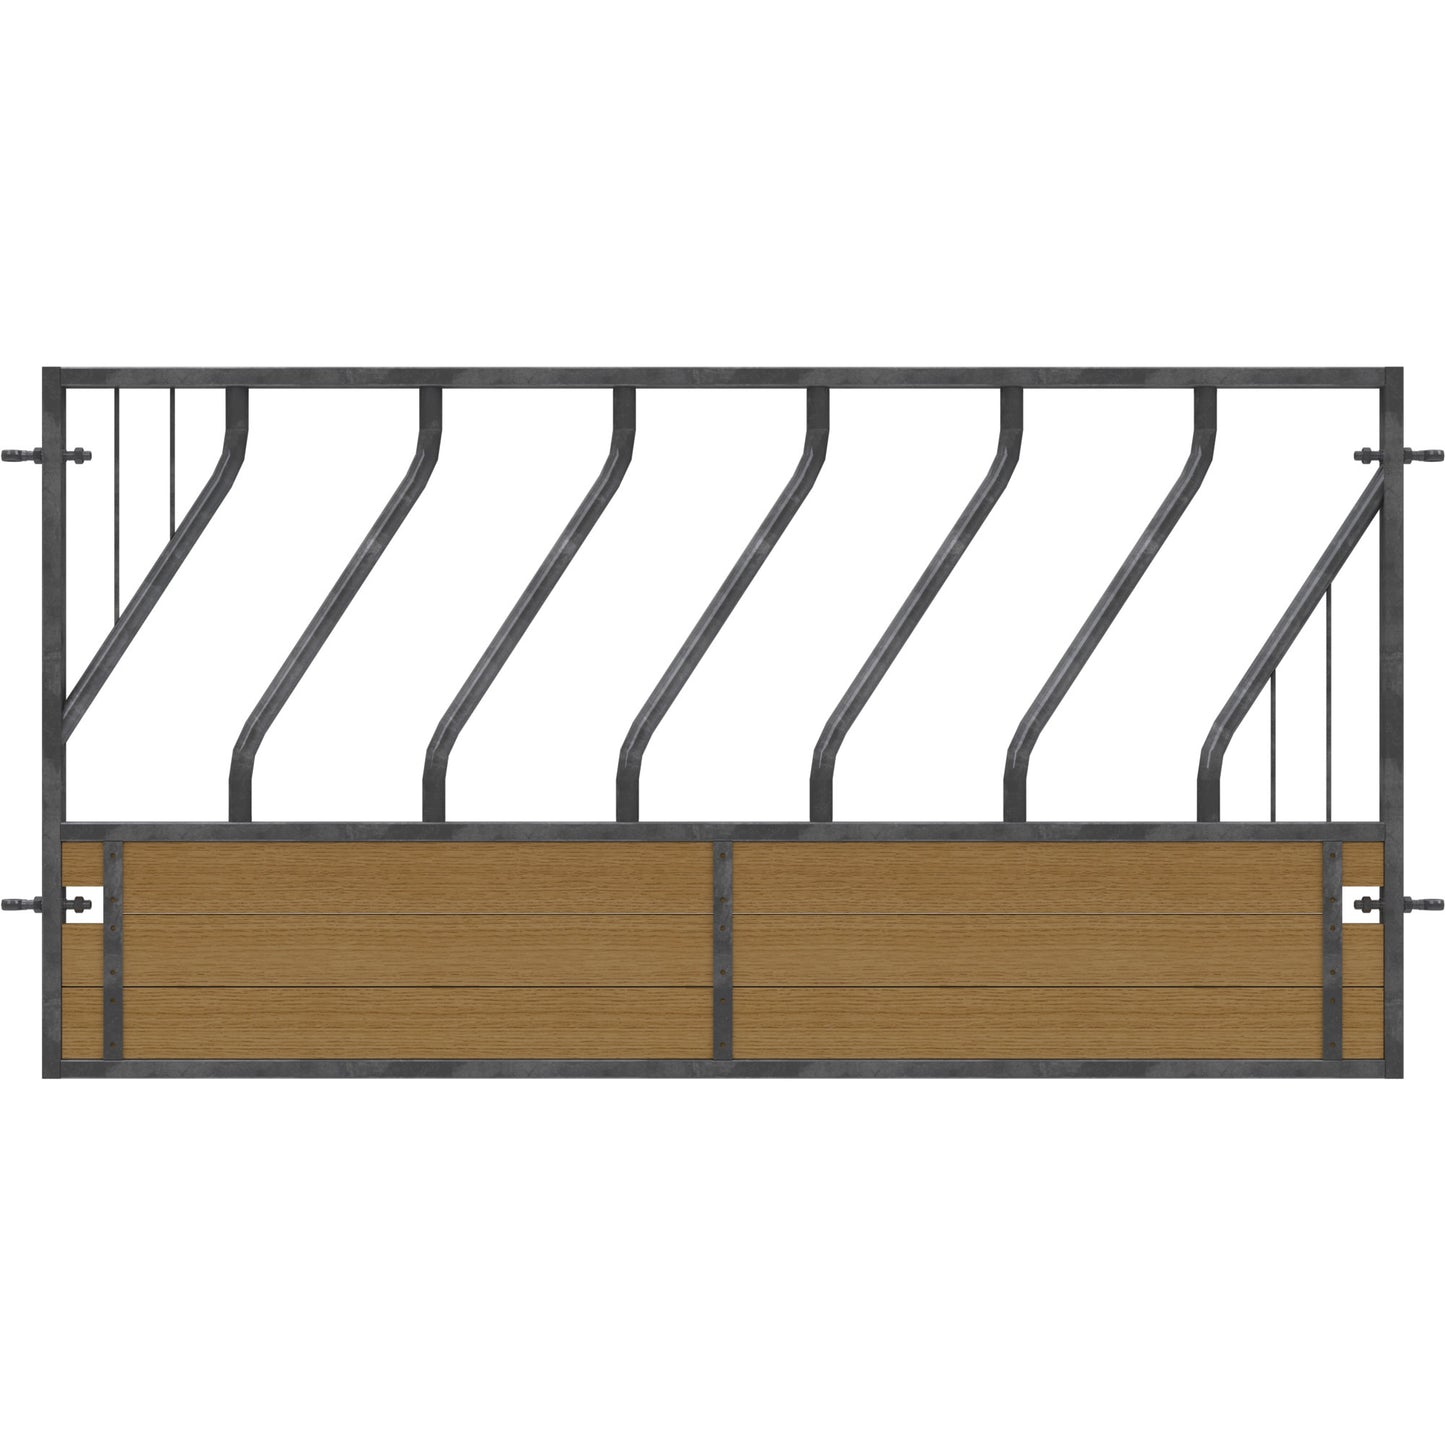 Pedigree Diagonal Feed Barrier Panel c/w timber base